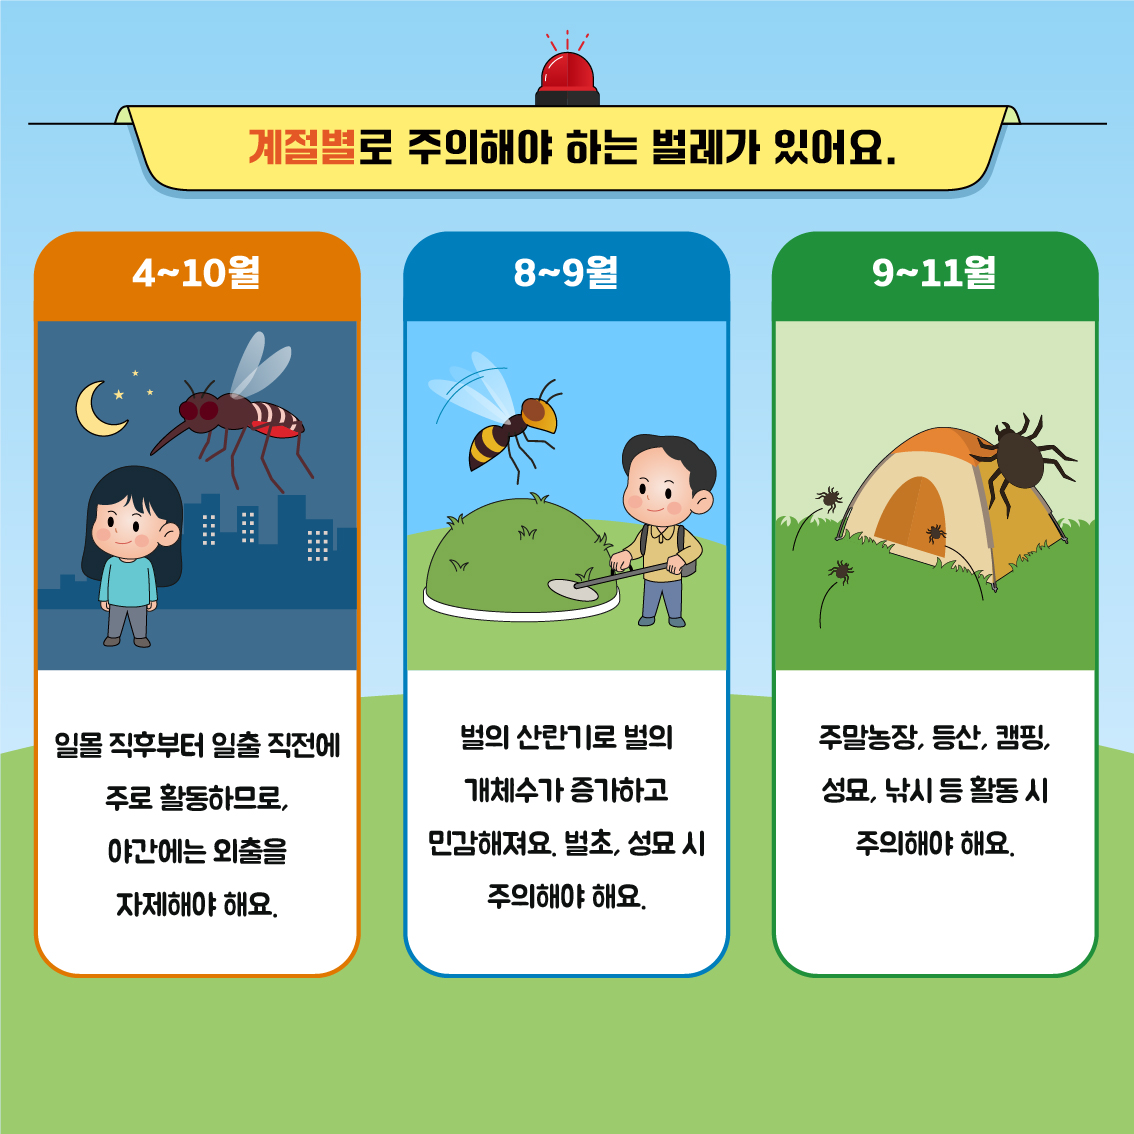 03. 학생 건강증진 정보_제3호(5월)_야외 활동 시 벌레에 물리면_페이지뷰3